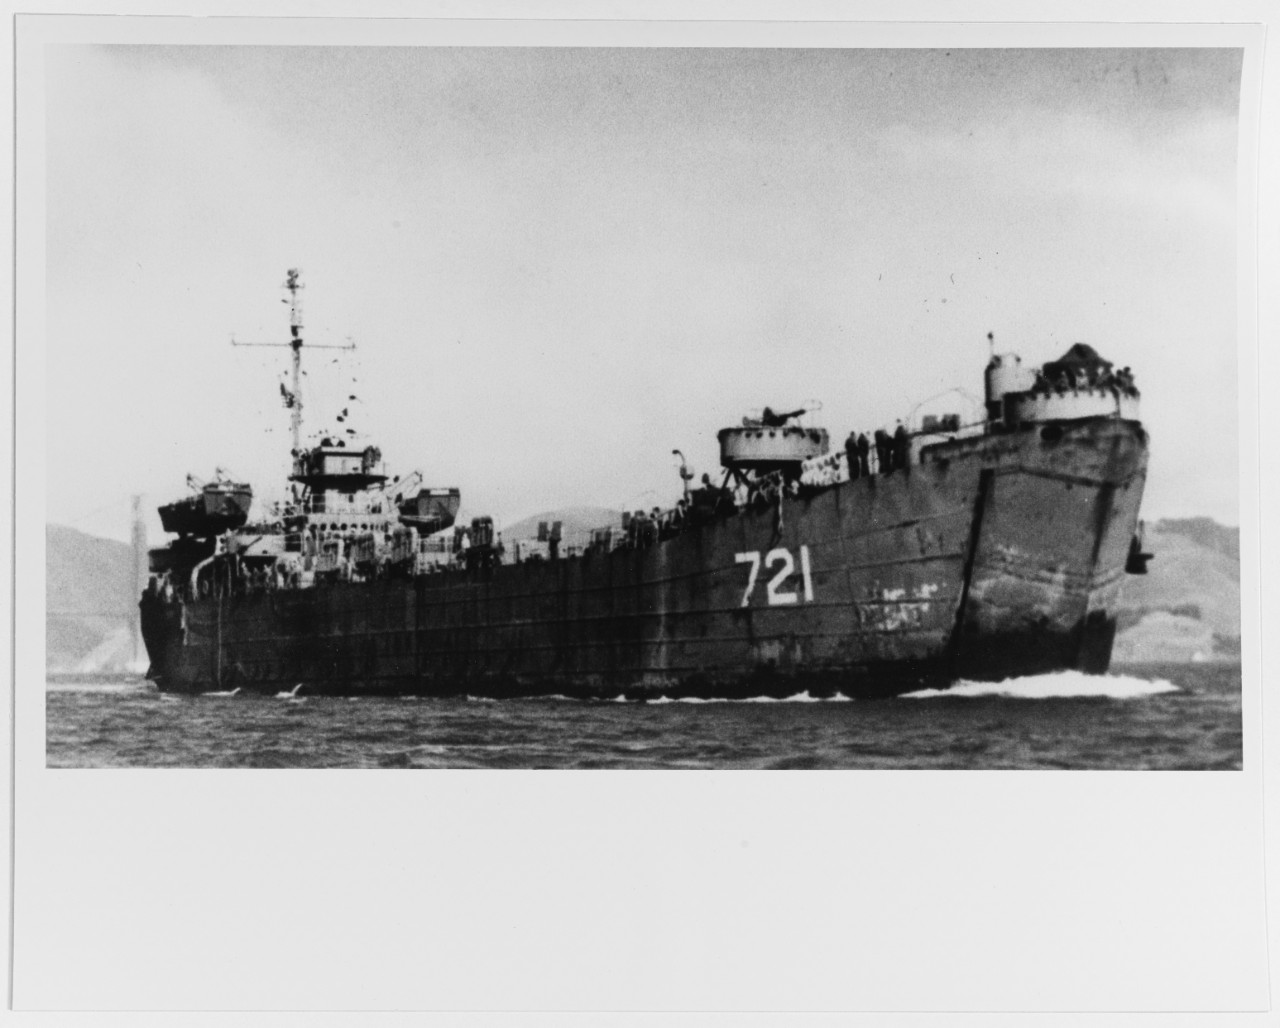 USS LST-721